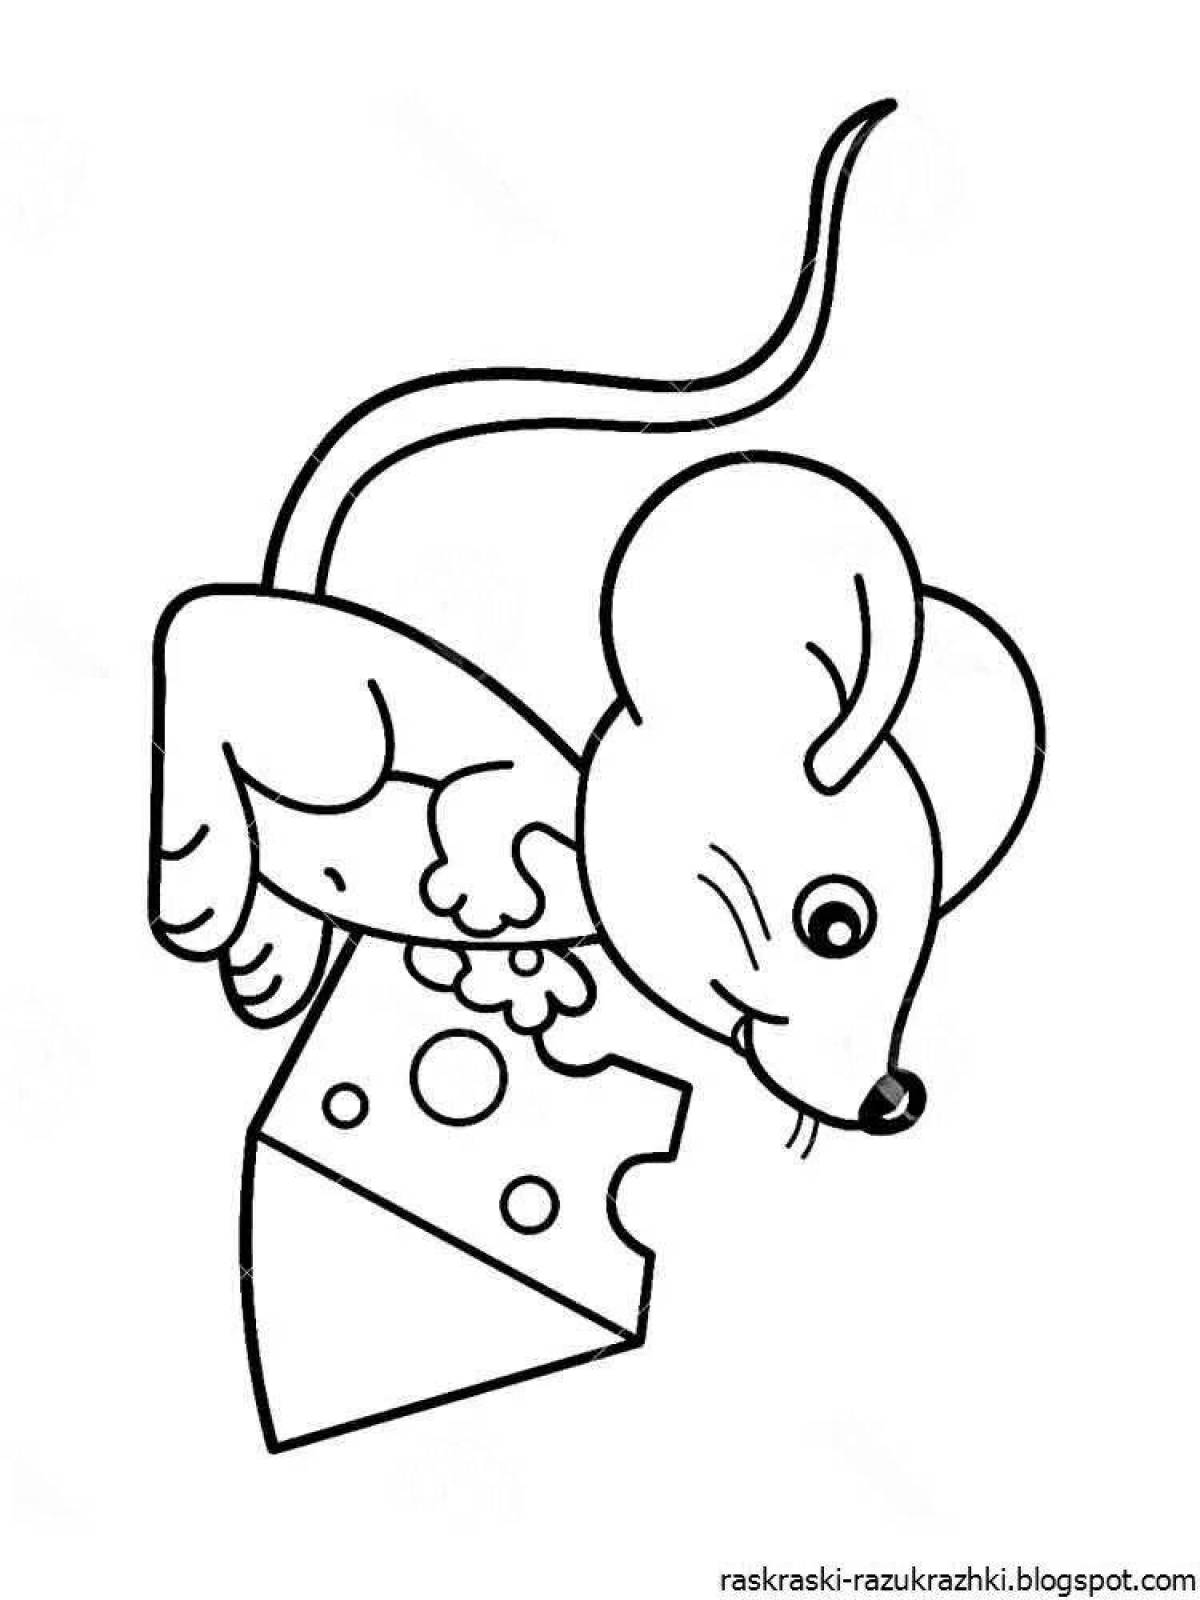 Мышка рисунок для детей раскраска